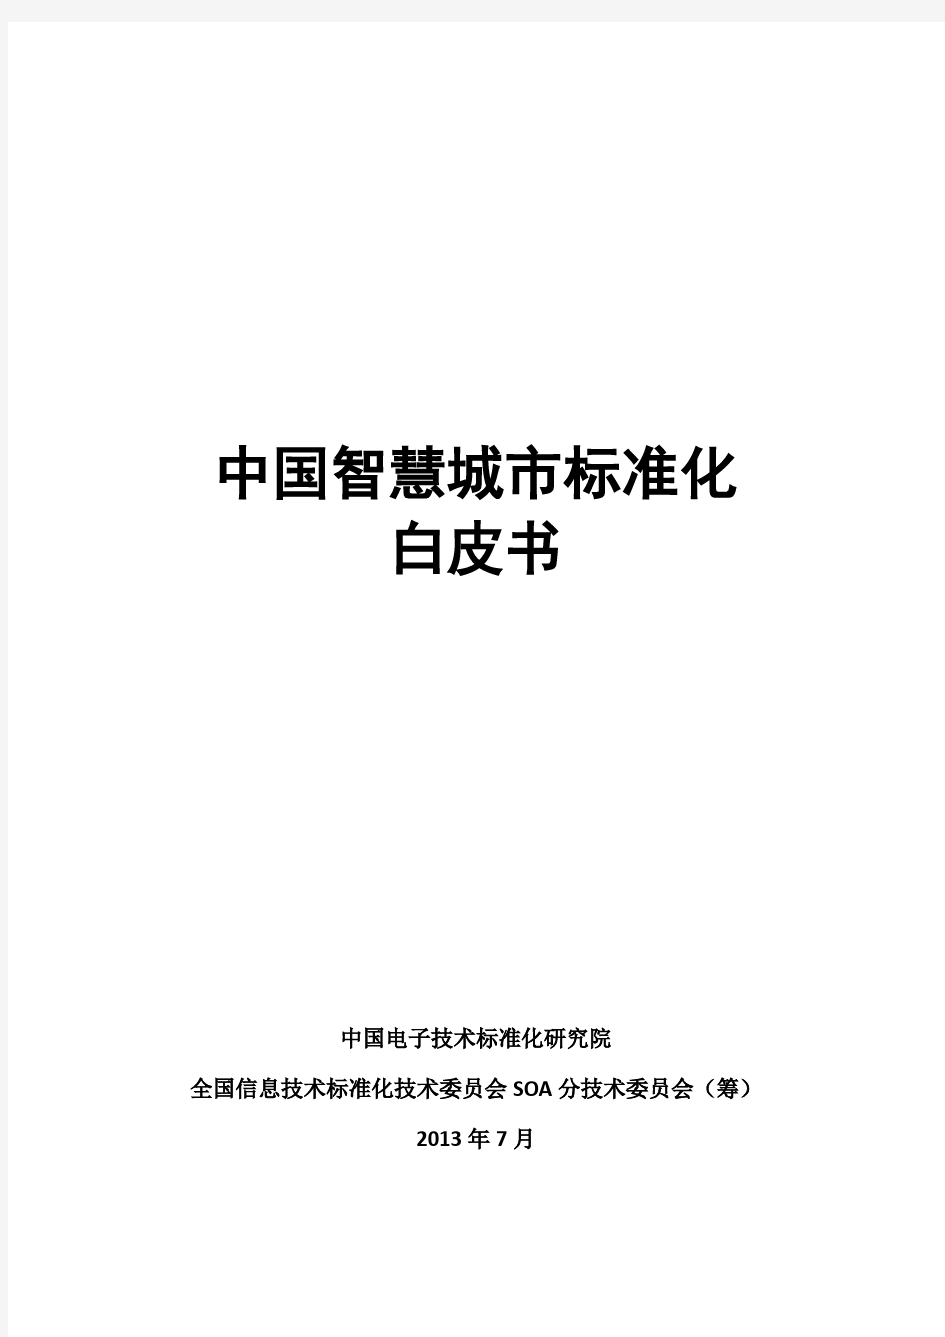 中国智慧城市标准化白皮书-中国电子技术标准化研究院